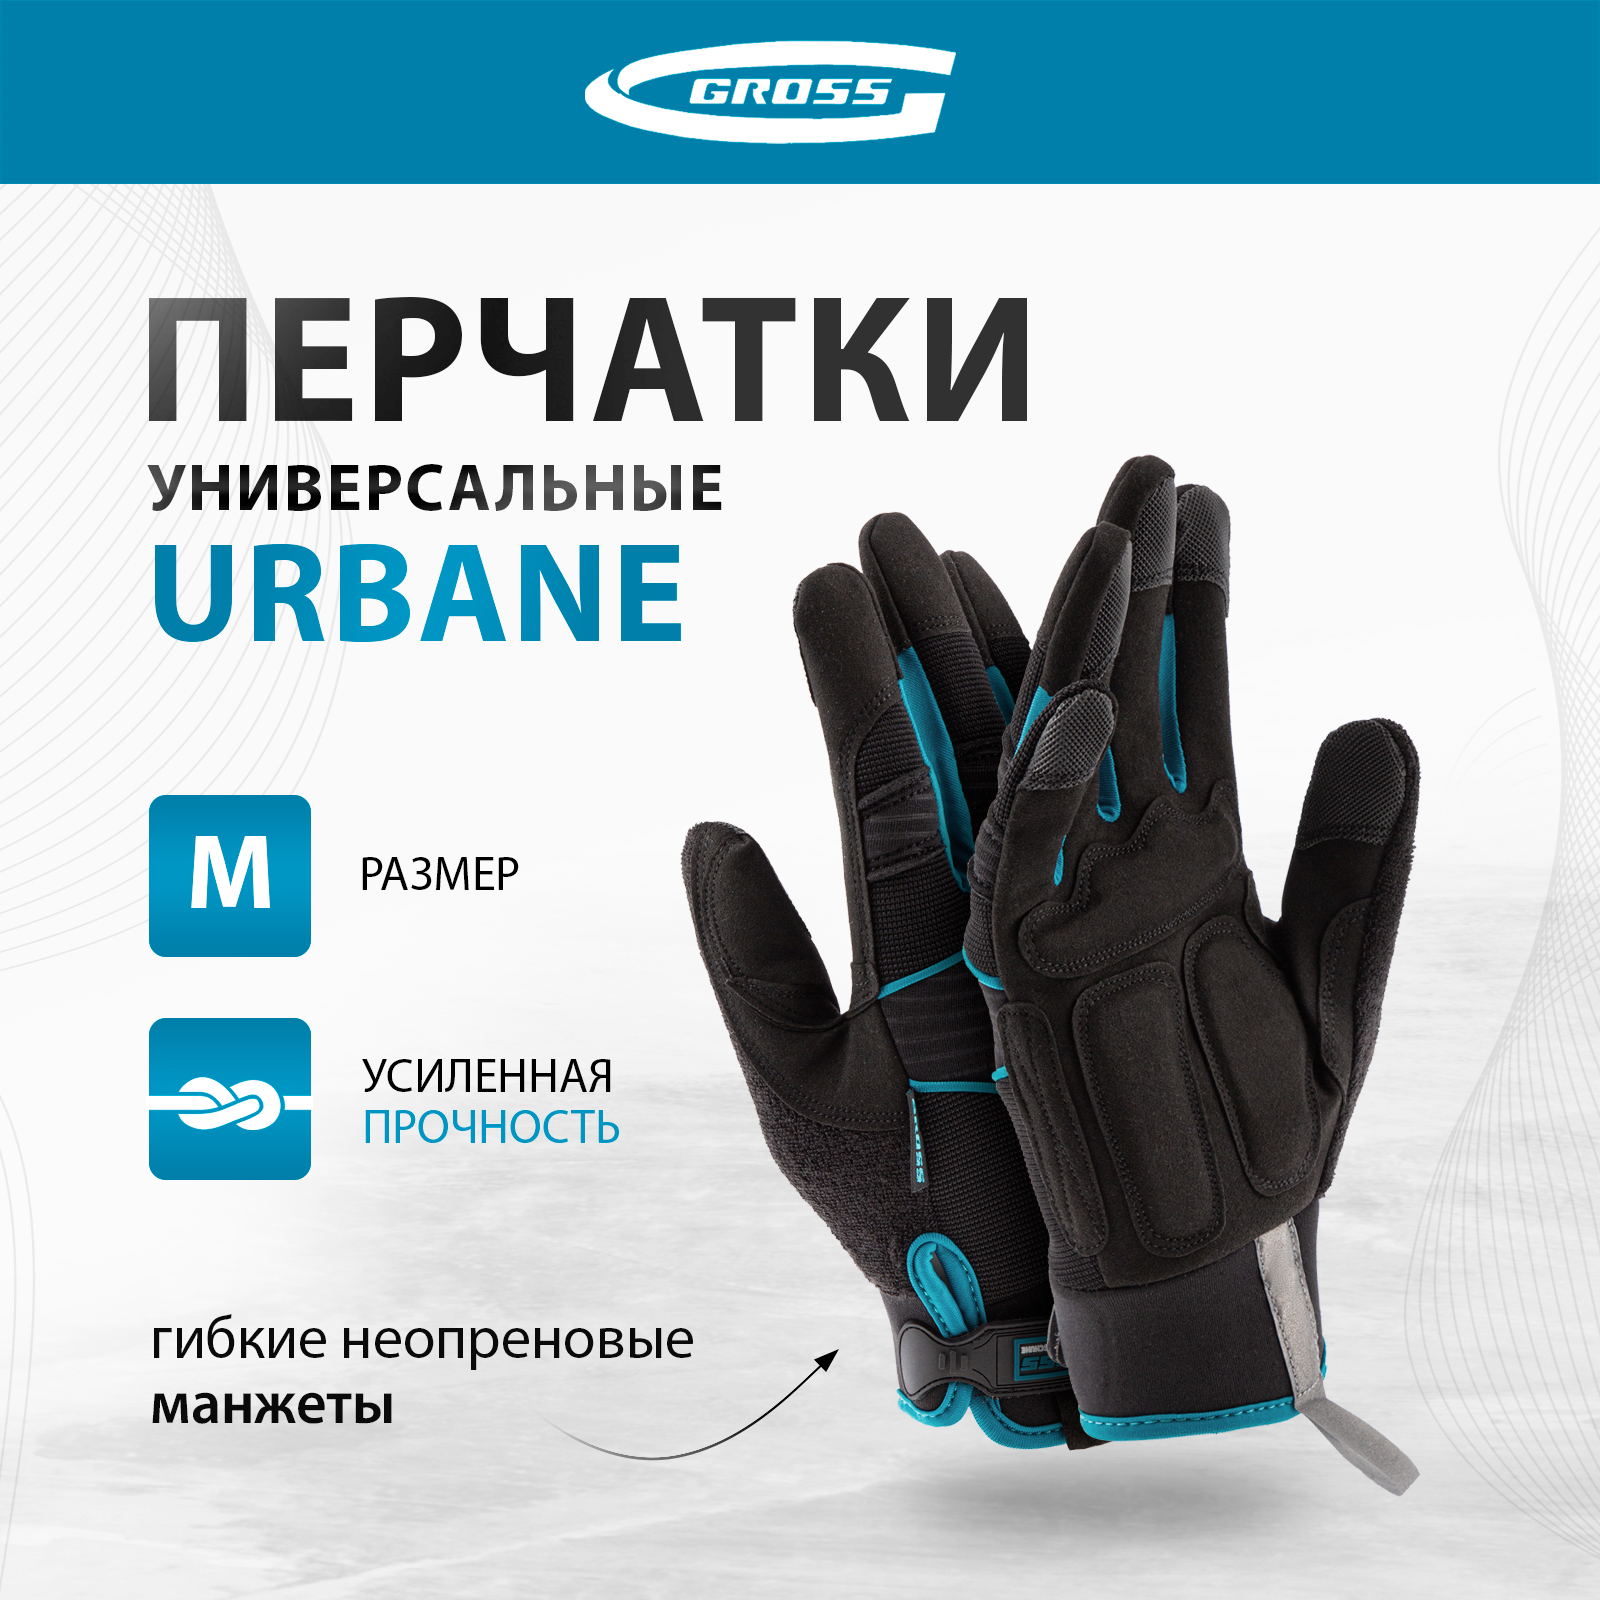 Перчатки универсальные комбинированные GROSS URBANE размер M (8) 90311 комбинированные облегченные перчатки gross